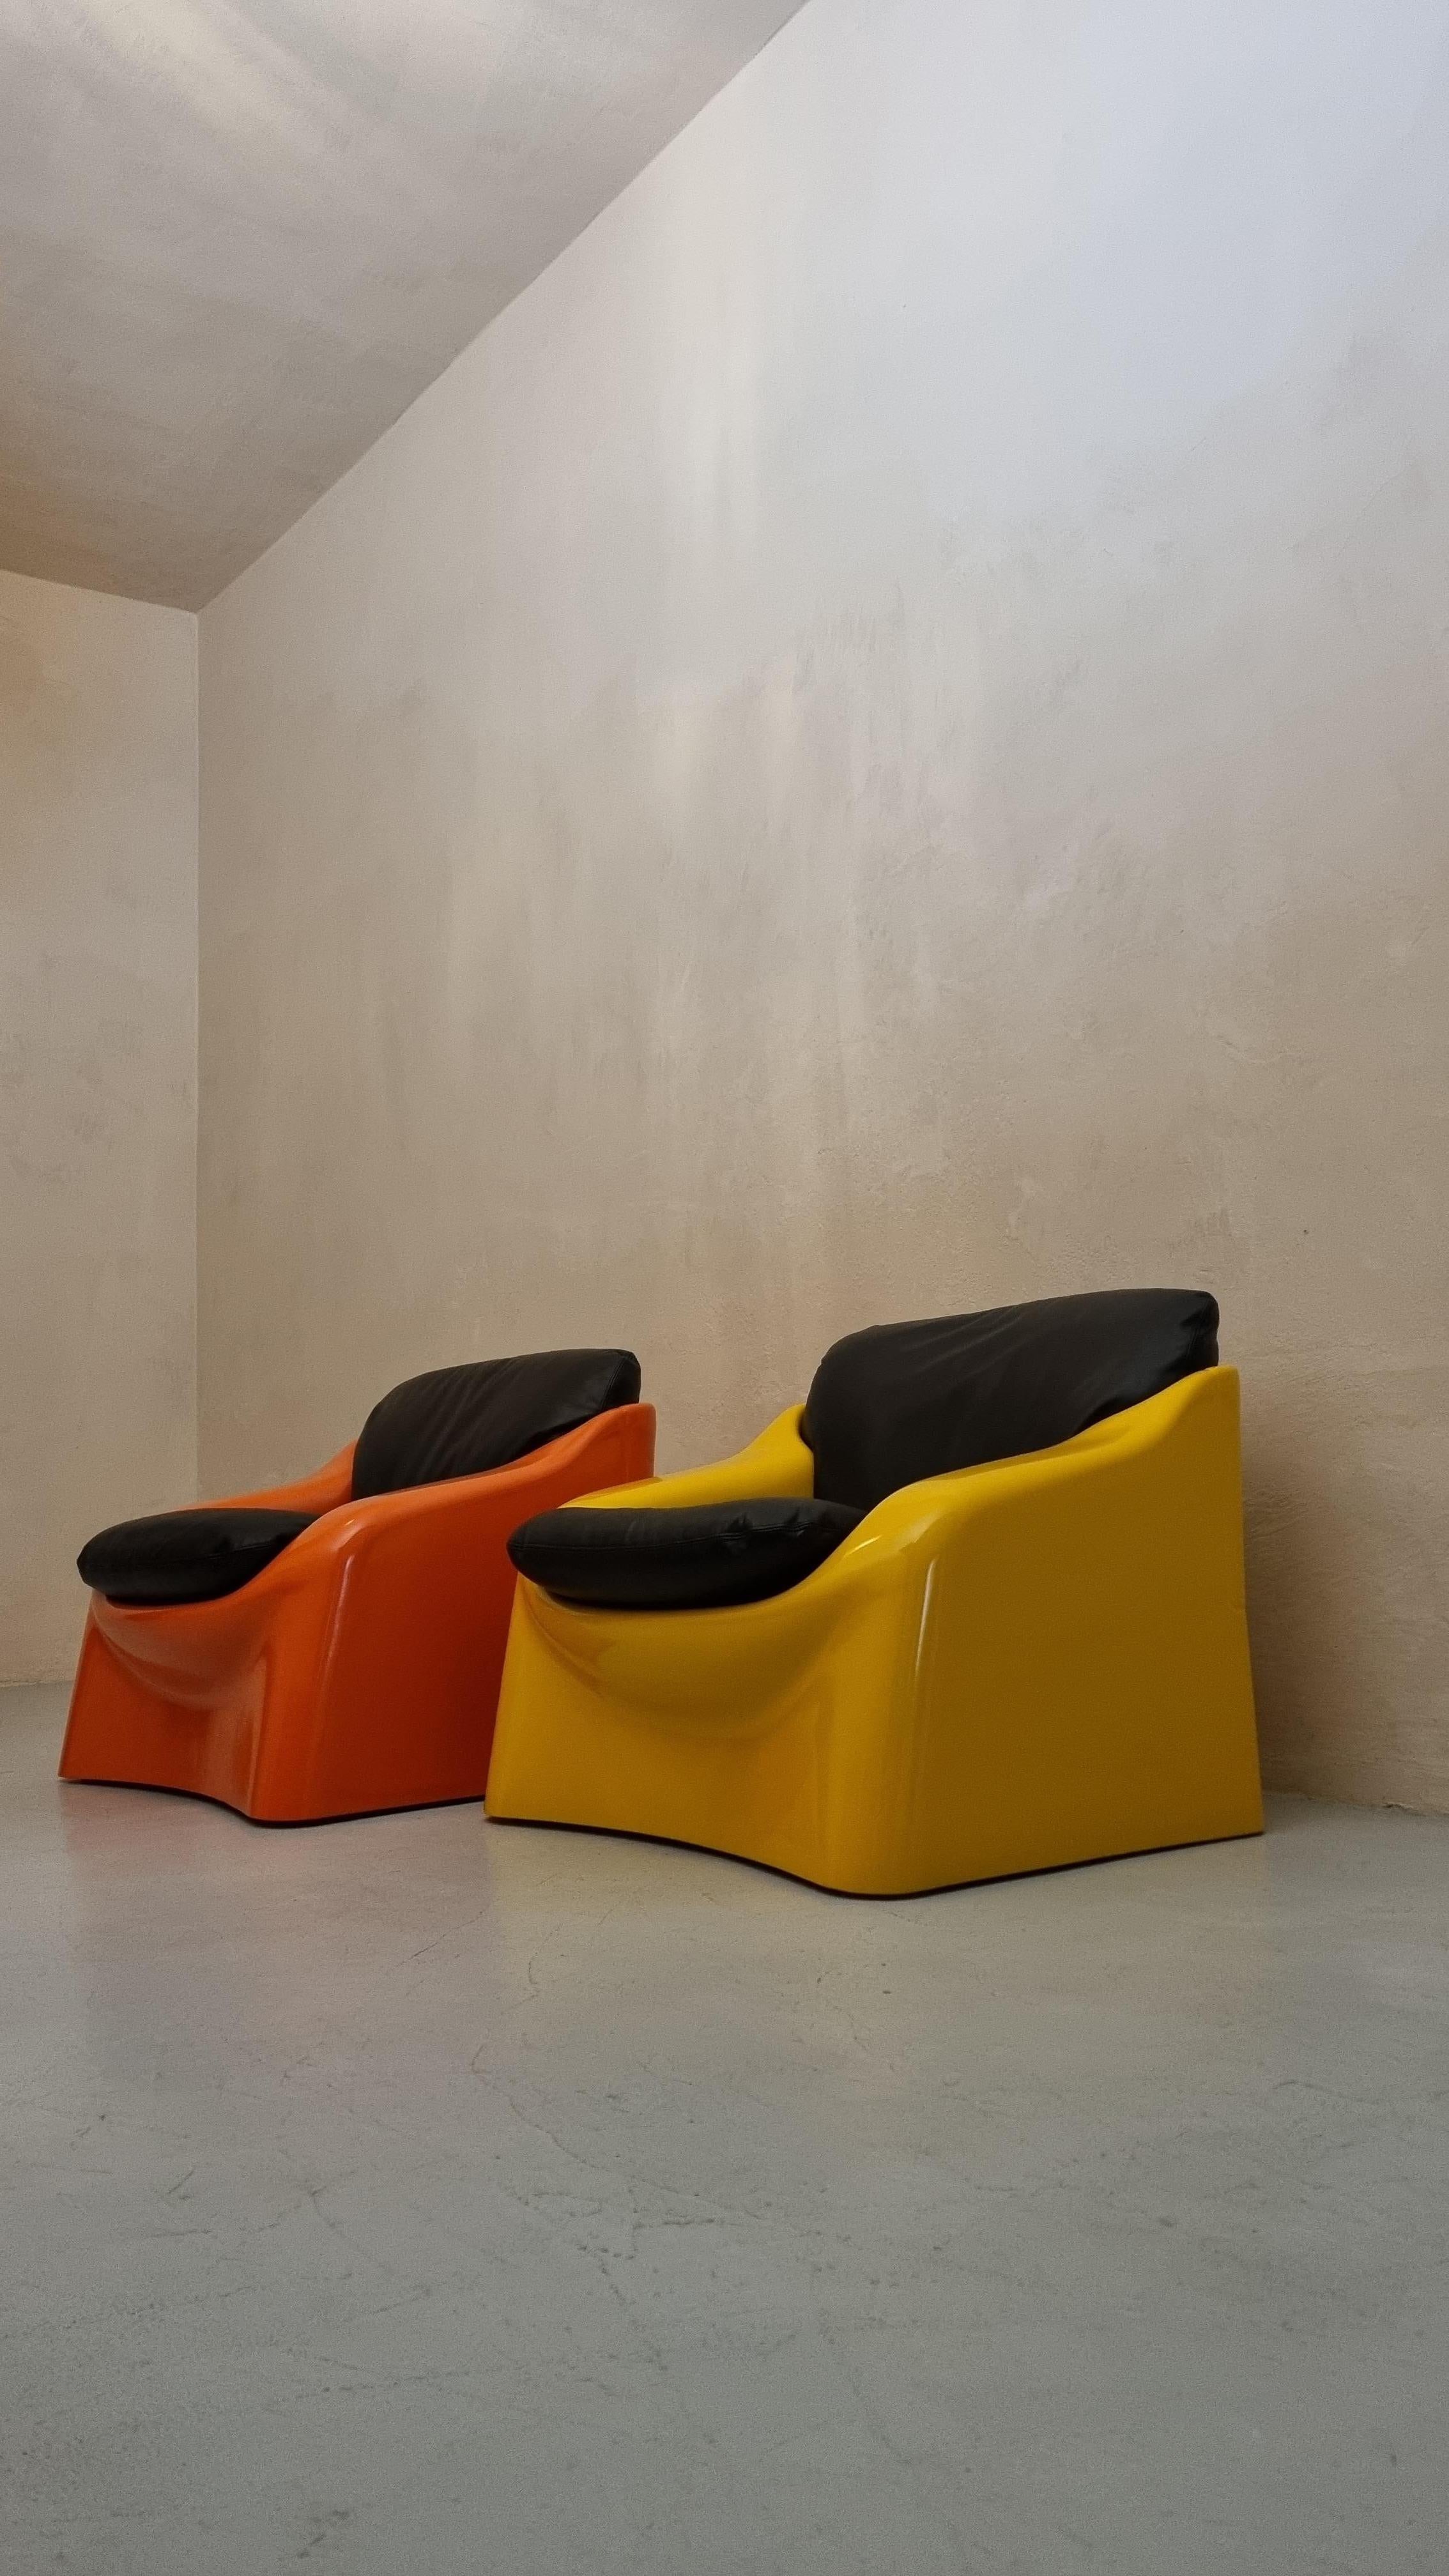 Leather Galassia armchair by Ferdinando Buzzi for Ferruccio Brunati, 1970 For Sale